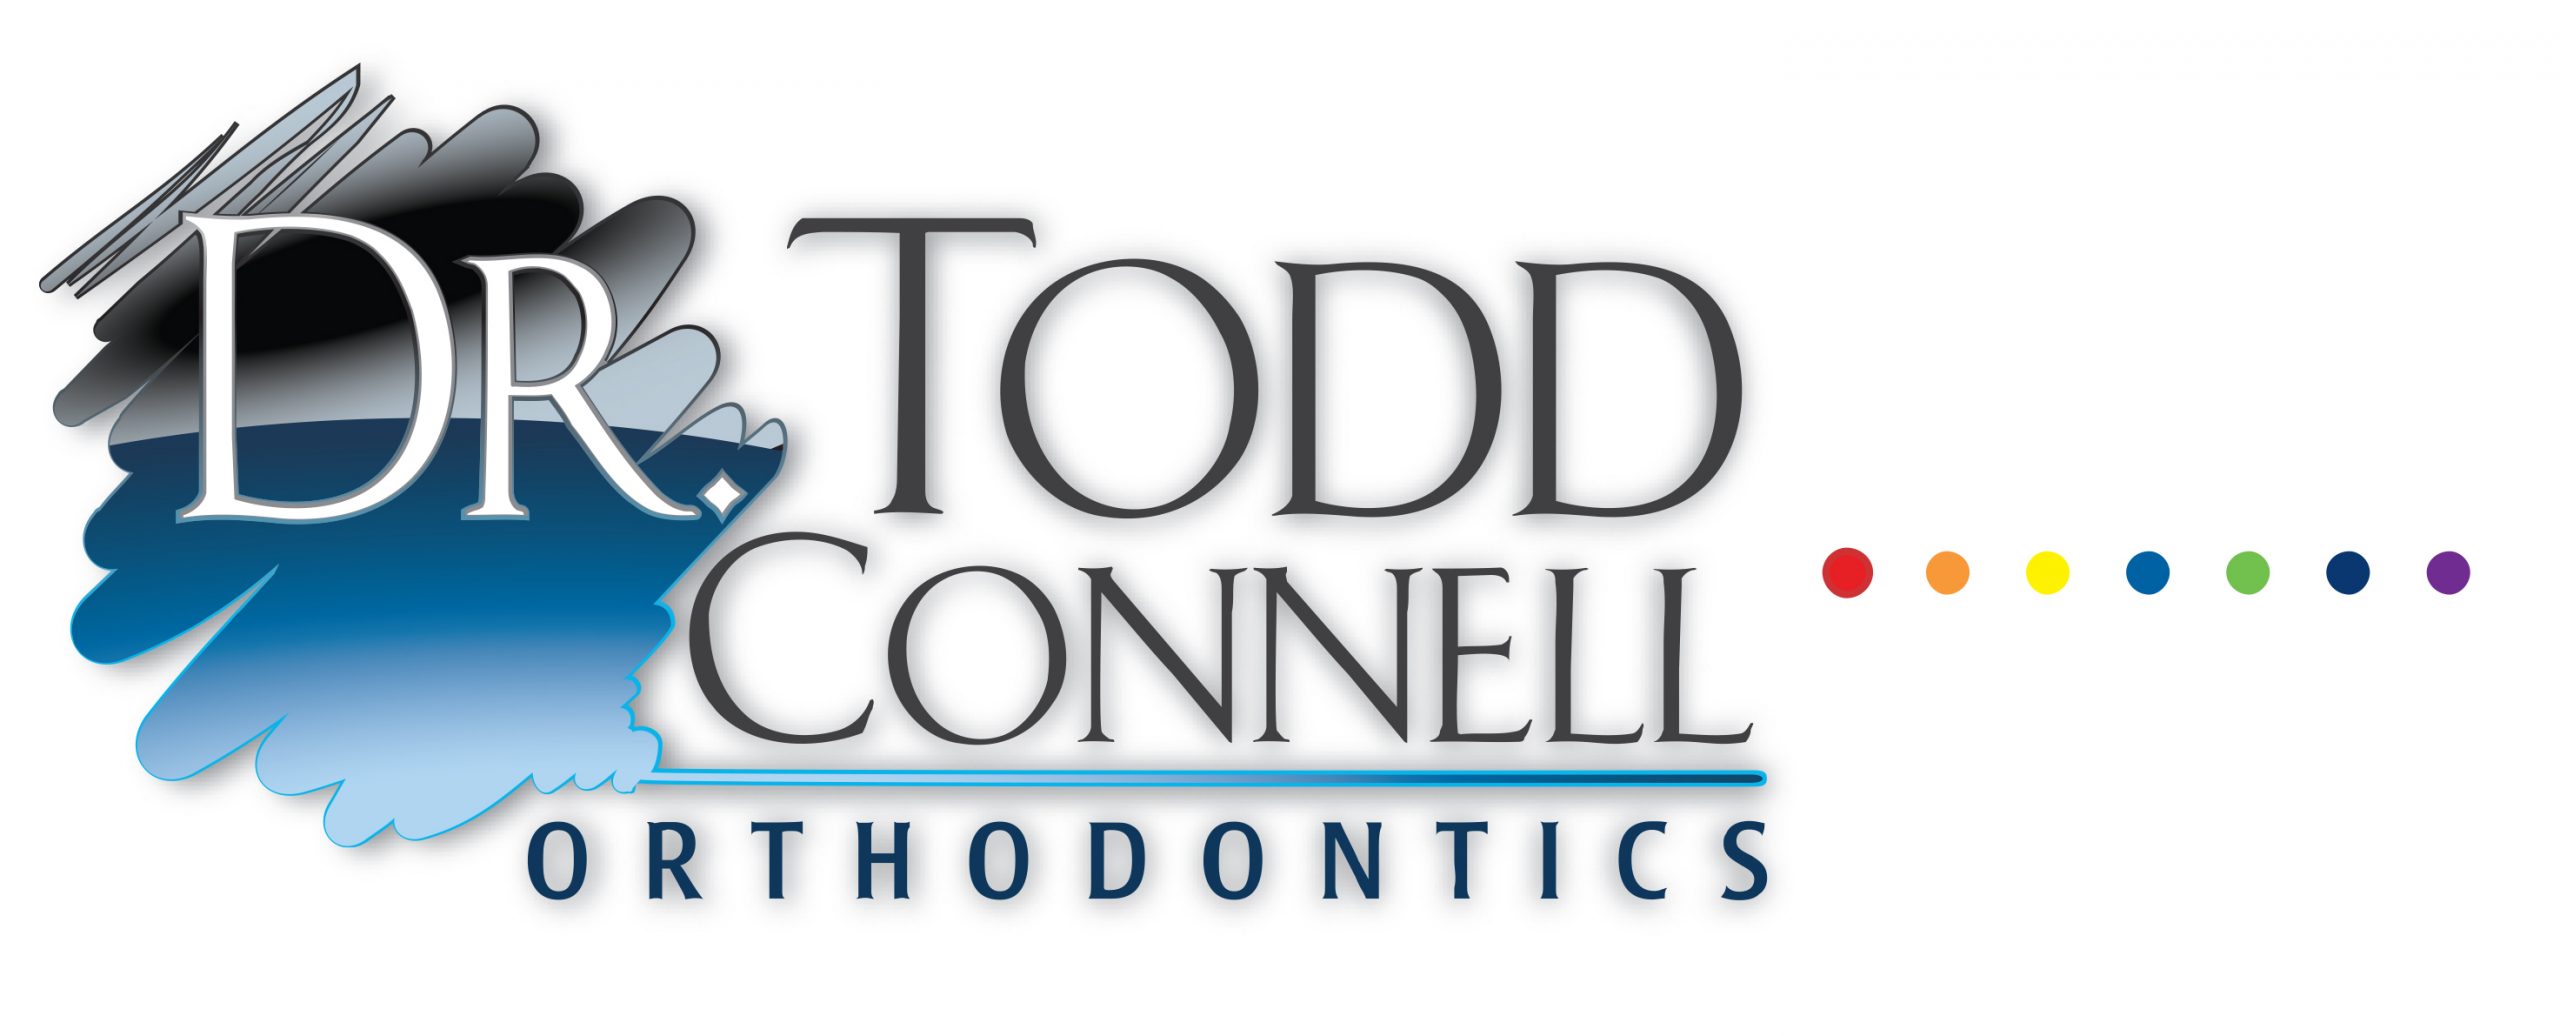 Brookfield Orthodontist, Oak Creek Orthodontist, Orthodontist, best orthodontists, braces,